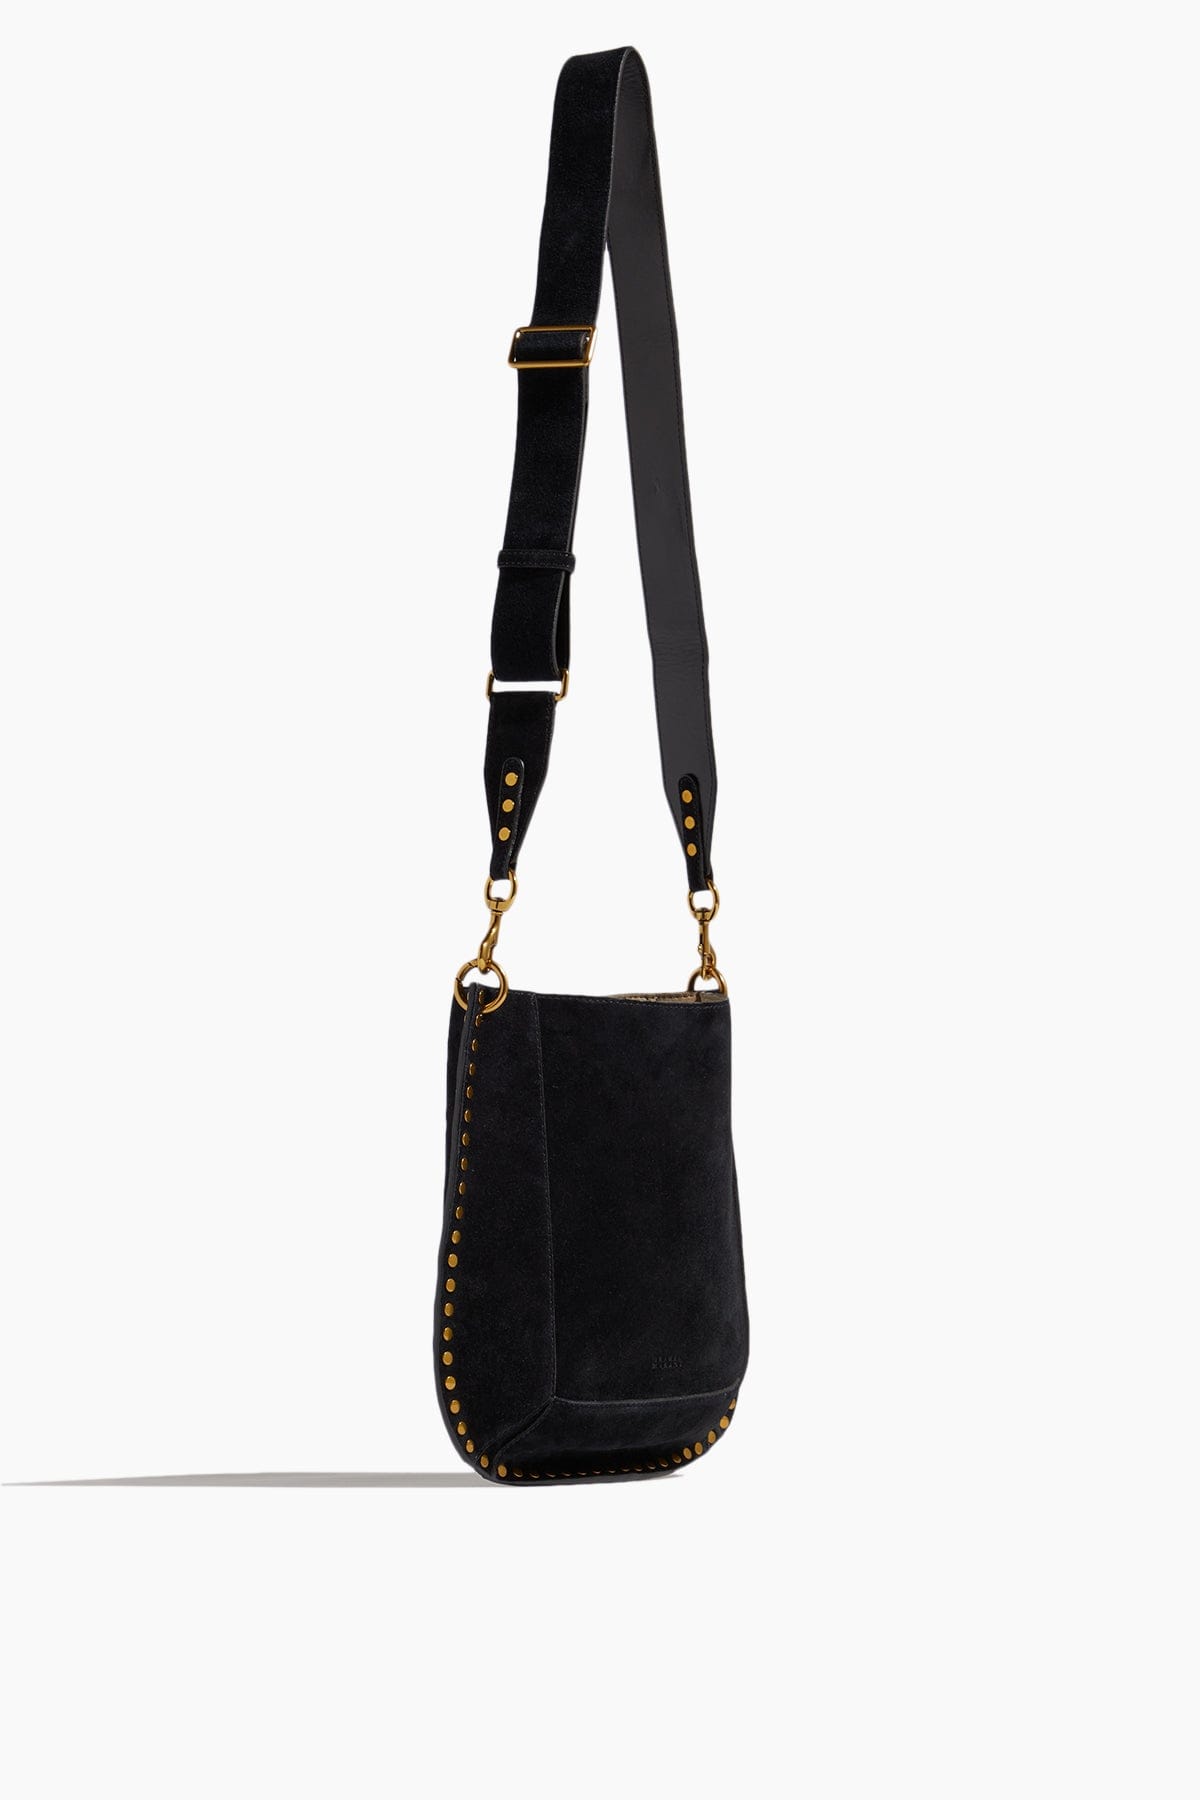 Isabel Marant Shoulder Bags Oskan Bag in Black Isabel Marant Oskan Bag in Black